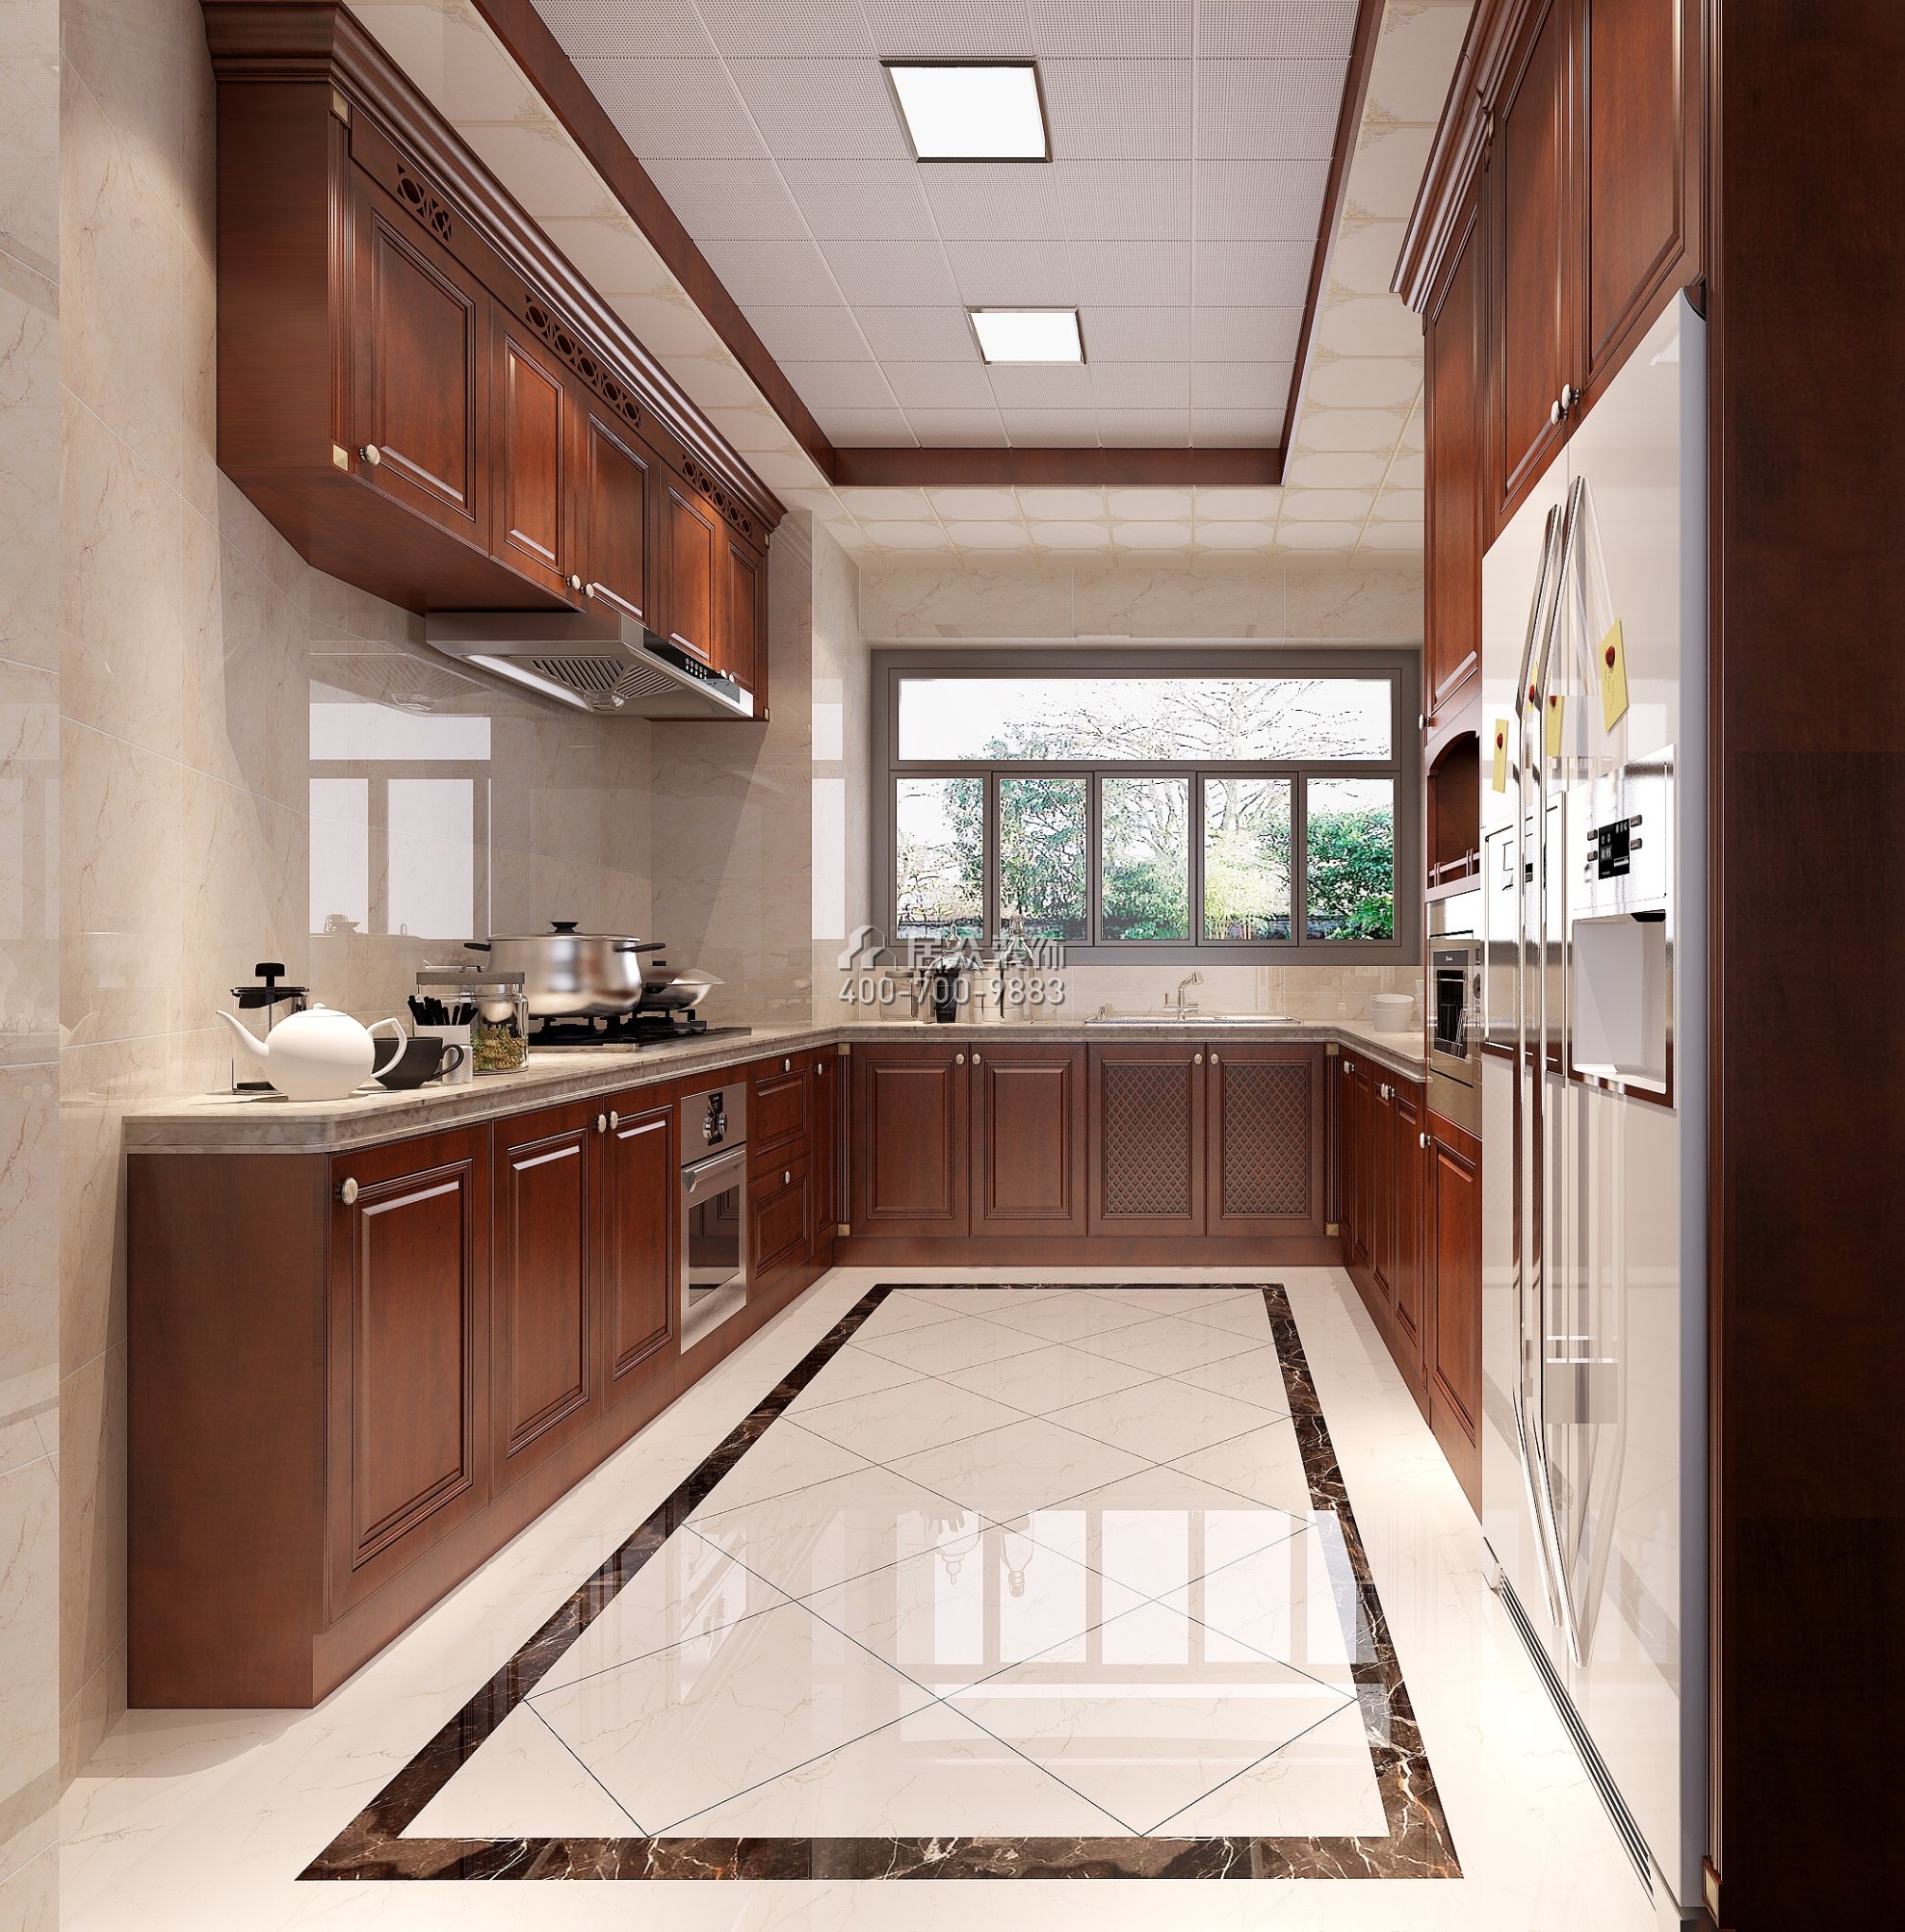 星河丹堤180平方米歐式風格平層戶型廚房裝修效果圖